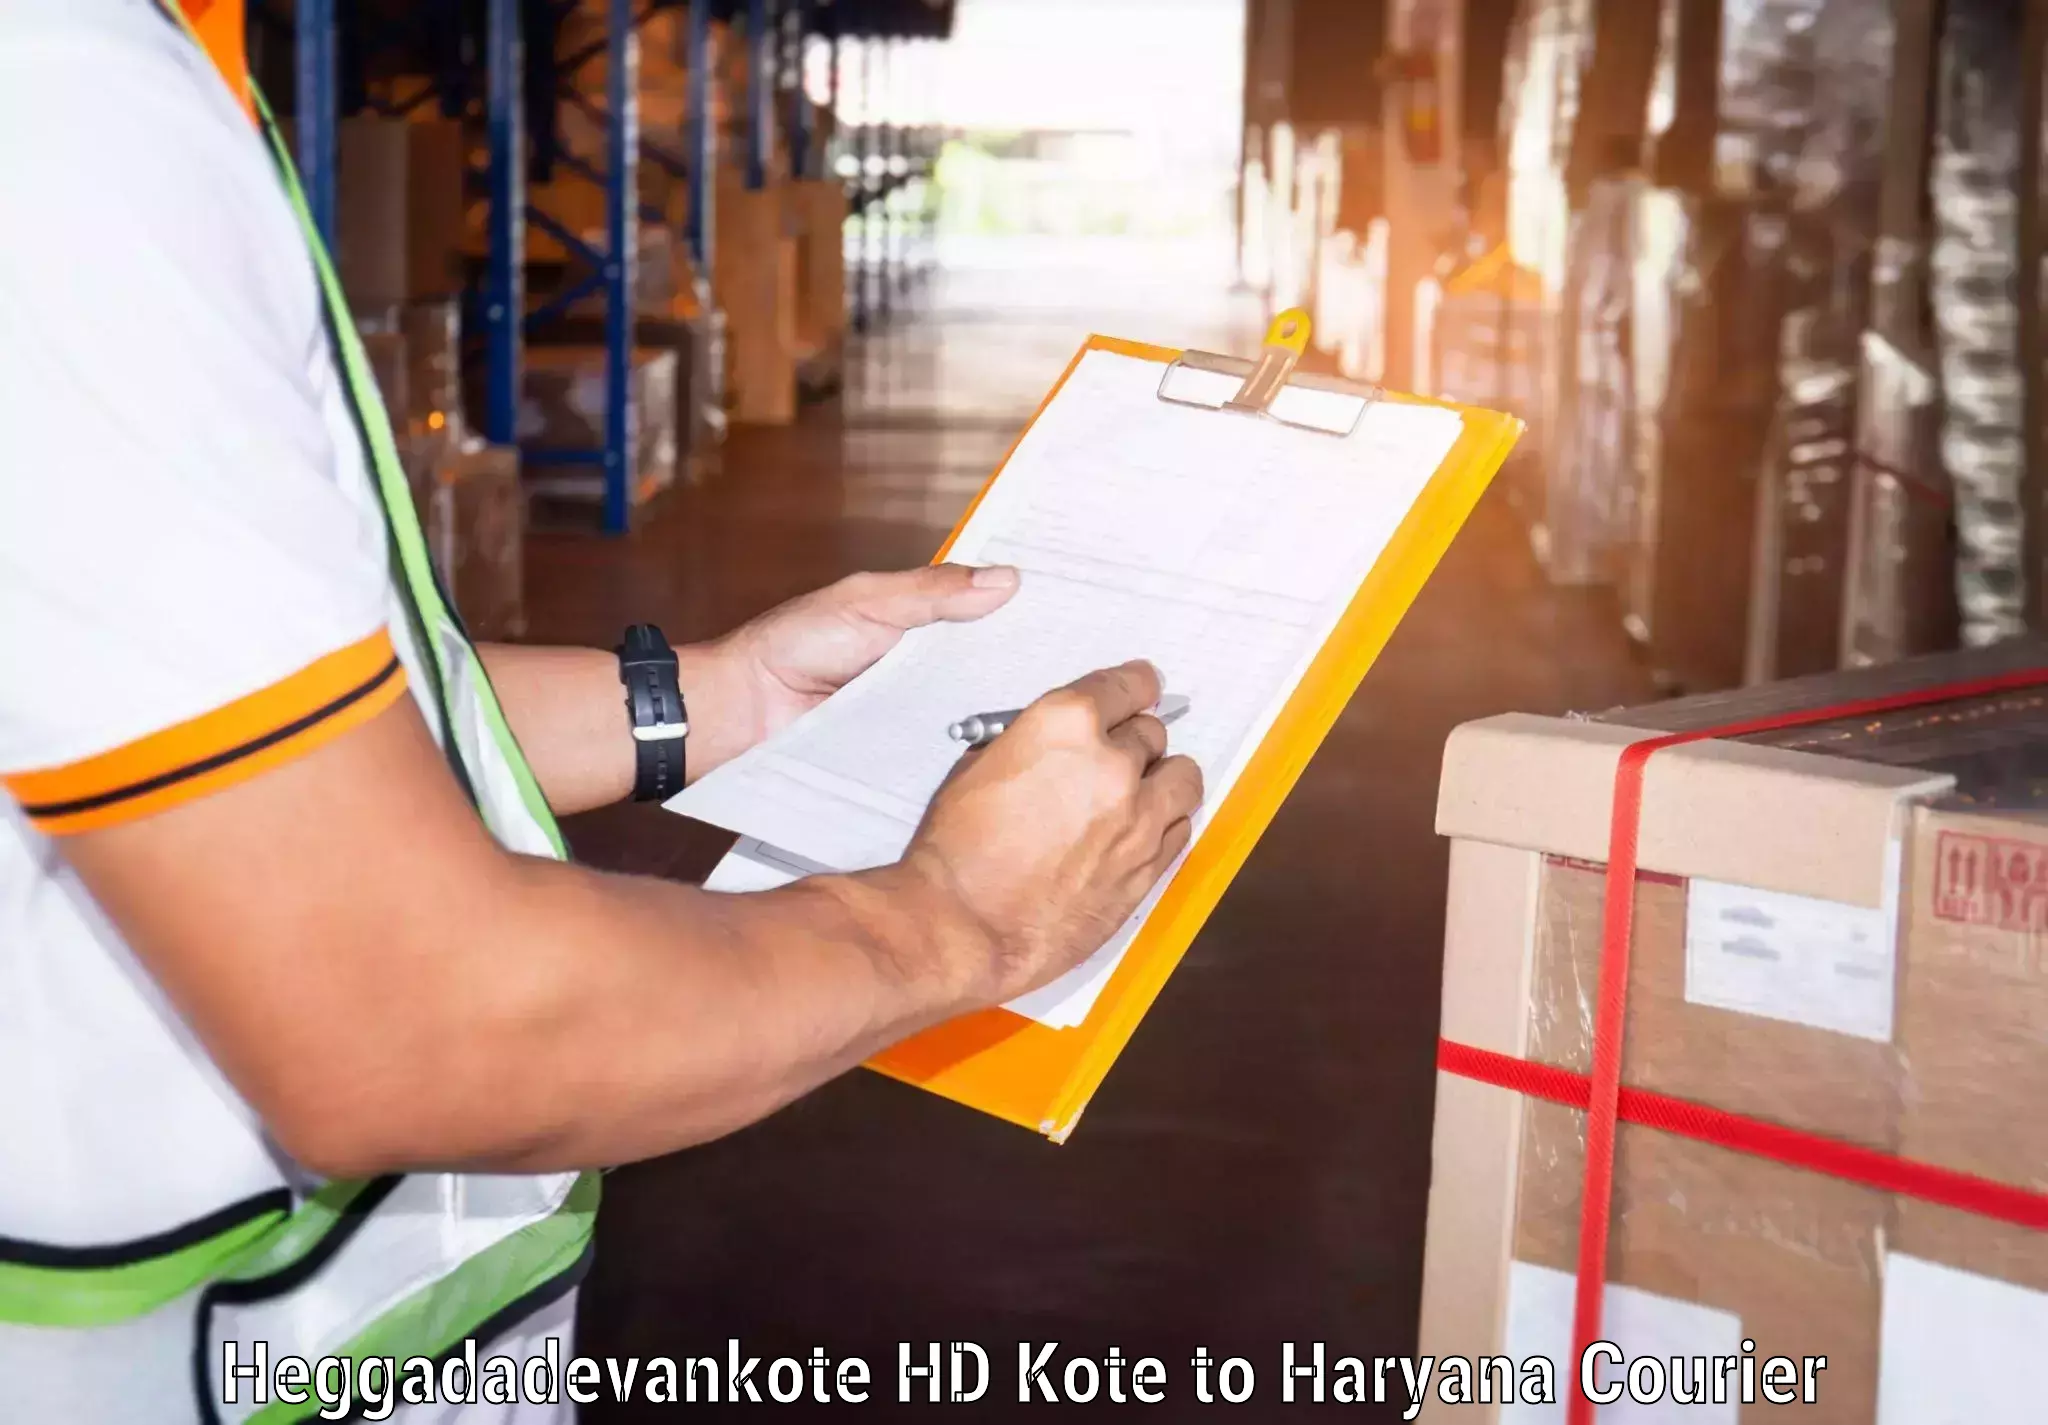 Reliable delivery network Heggadadevankote HD Kote to Taraori